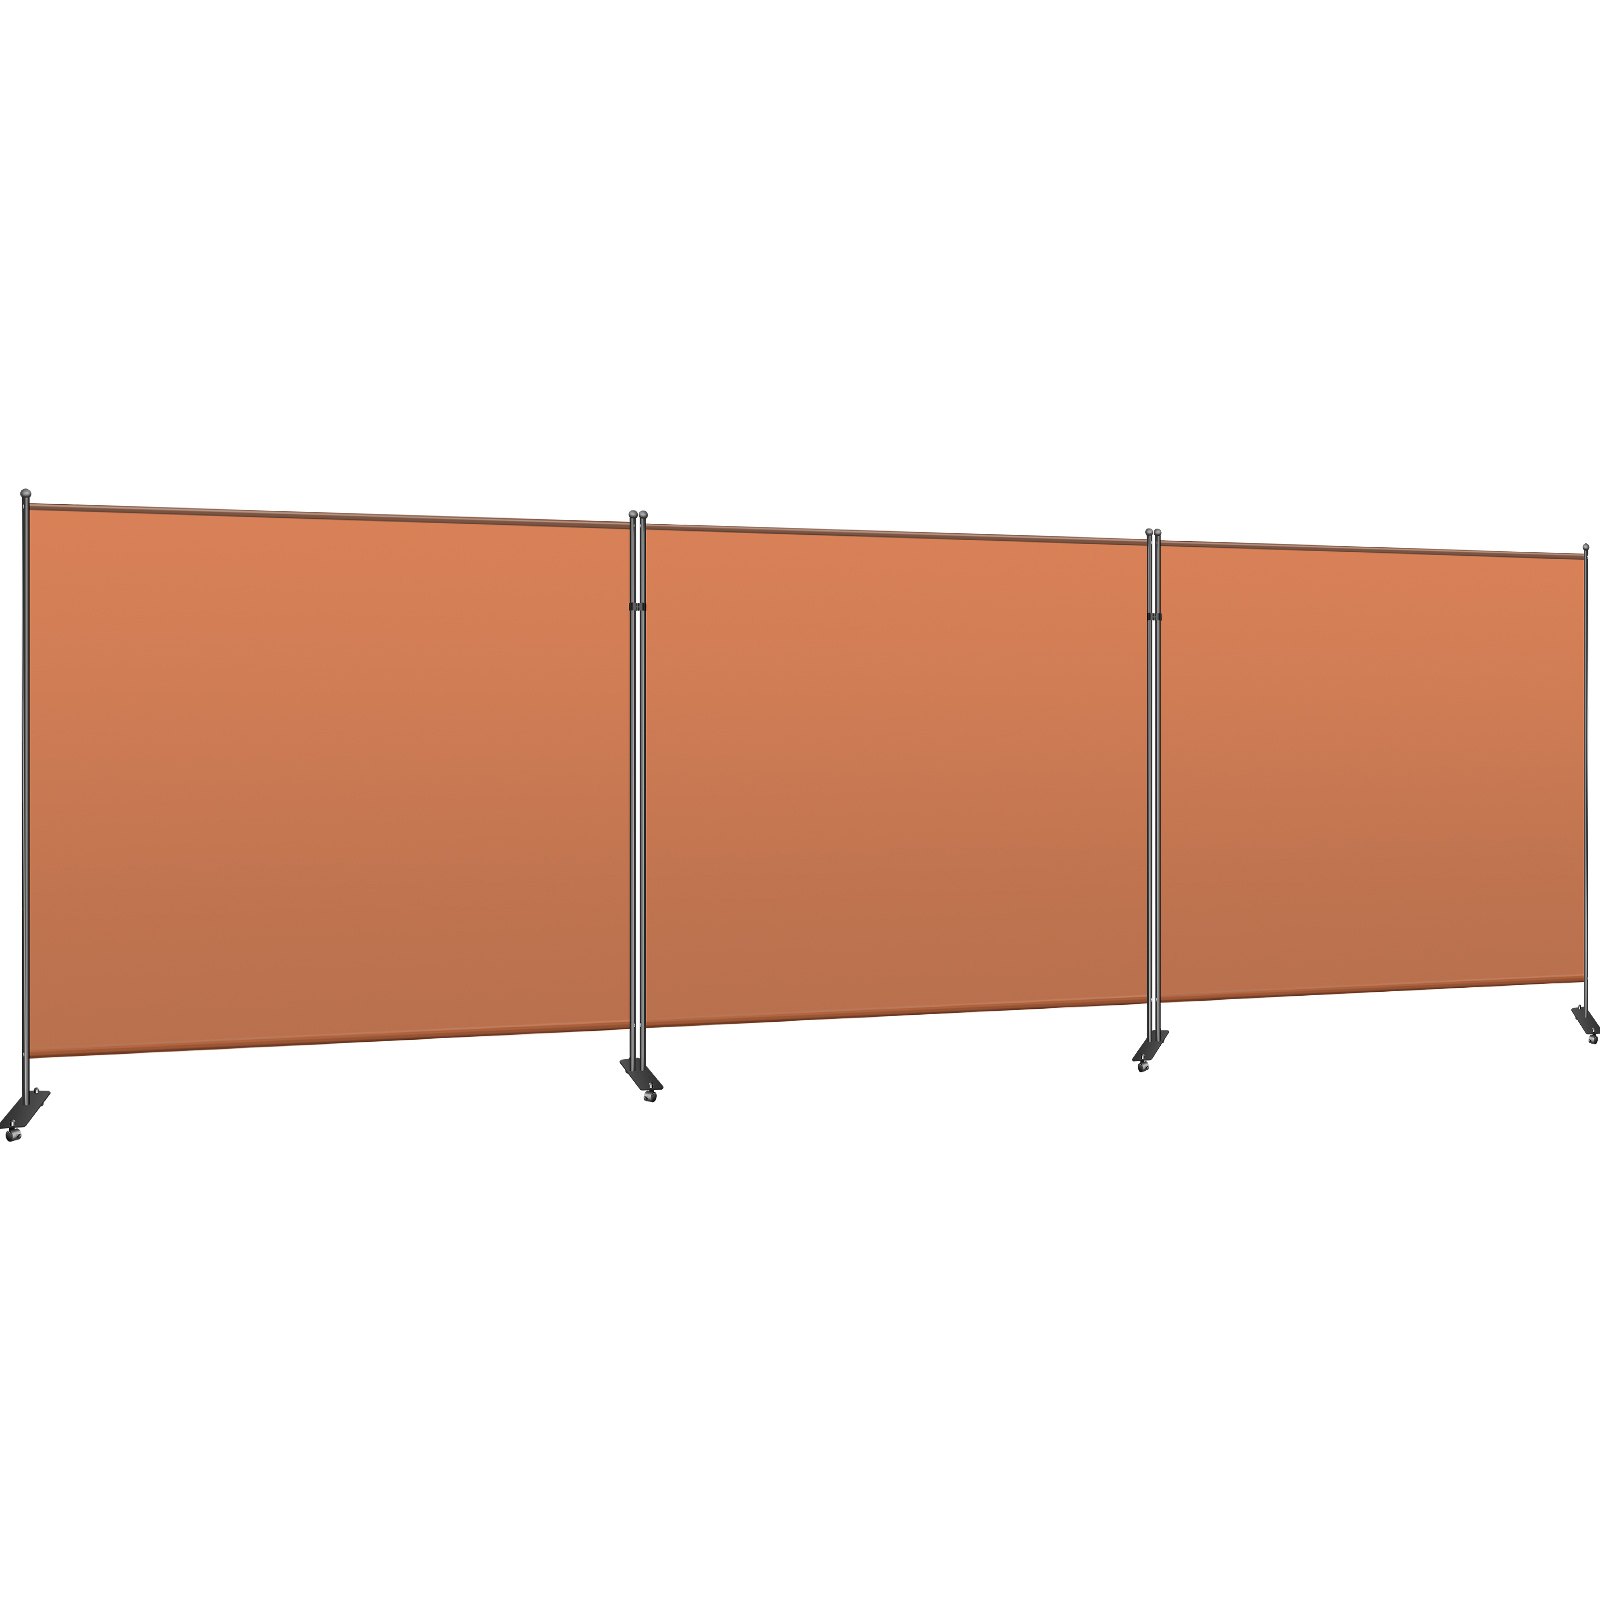 VEVOR Office Partition Room Divider Wall 216"x72" 3-Panel Office Divider Orange от Vevor Many GEOs